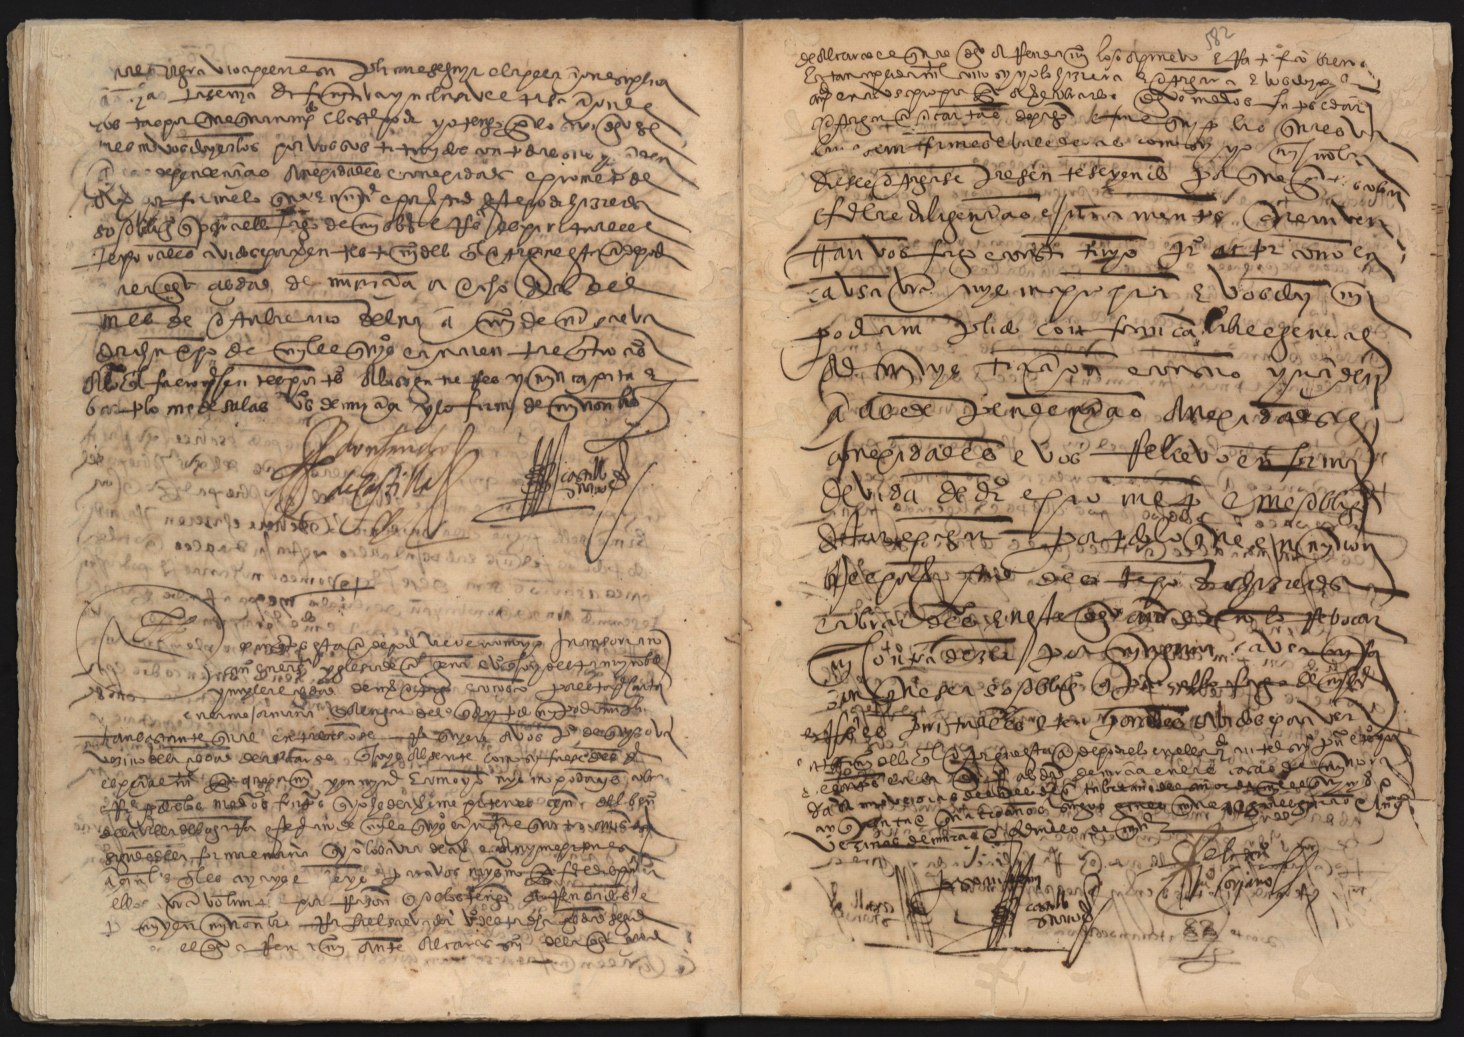 Registro de Lope del Castillo, Murcia: T. 1 de 1554.